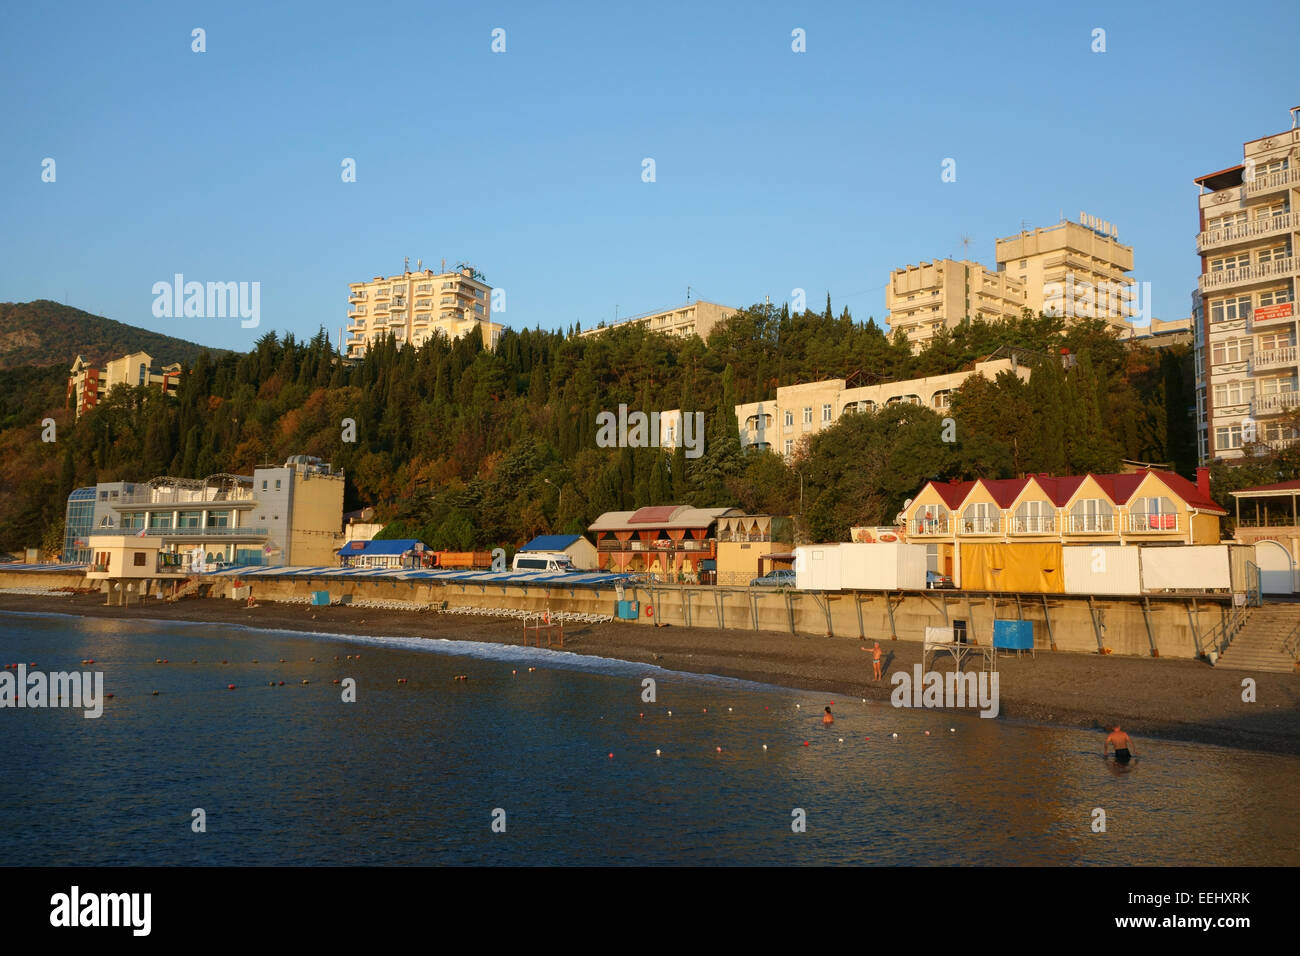 Public beach in the resort town of Alushta, Crimea, Russia Stock Photo